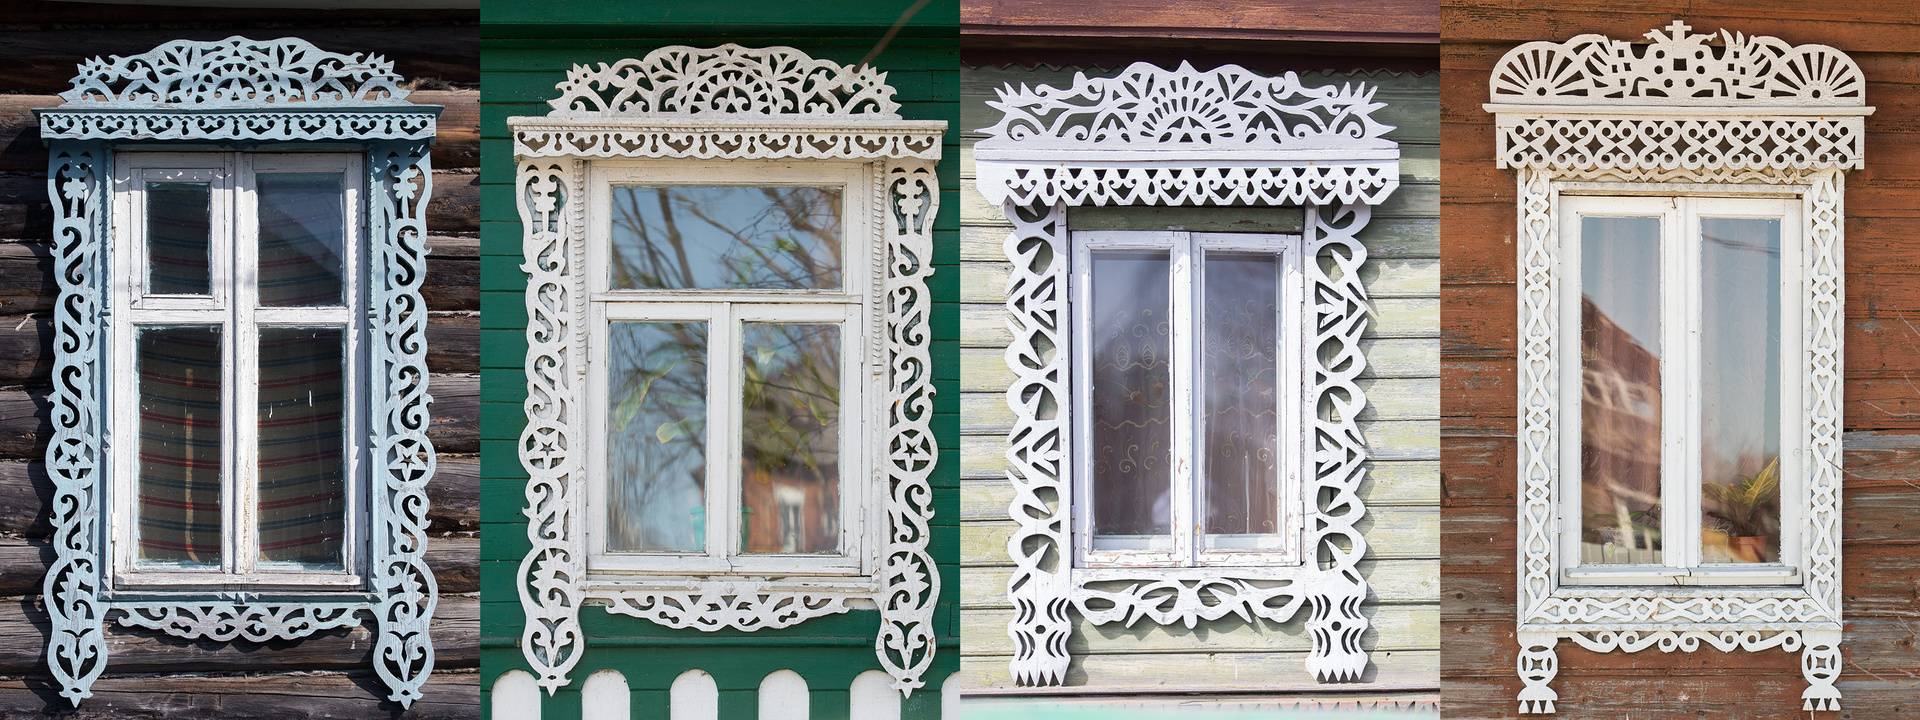 Красивые наличники на окна: шаблоны и трафареты своими руками